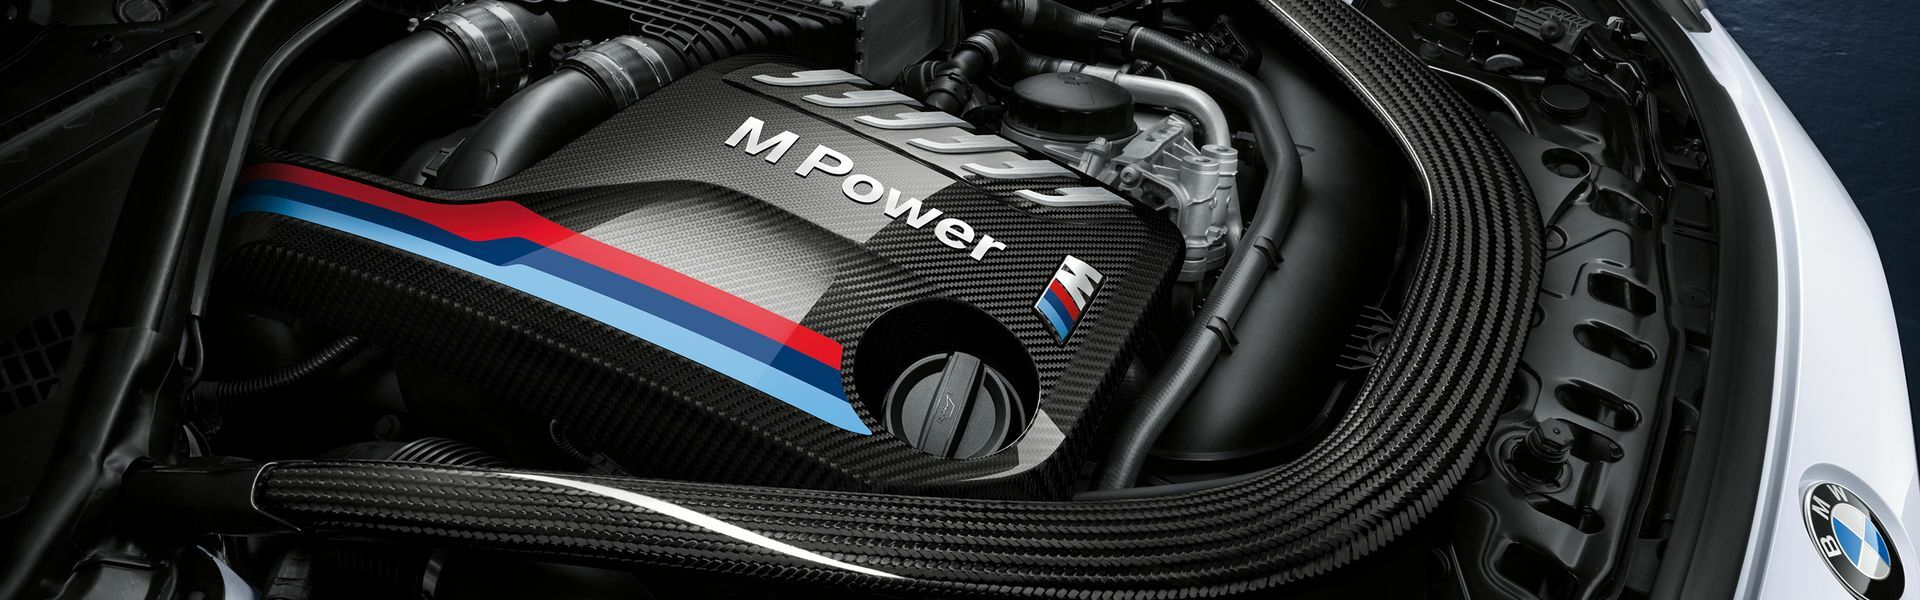 Zvýšení výkonu/ Softwarové úpravy/ Drobné performance díly pro automobil Porsche 911 GT3 991.2